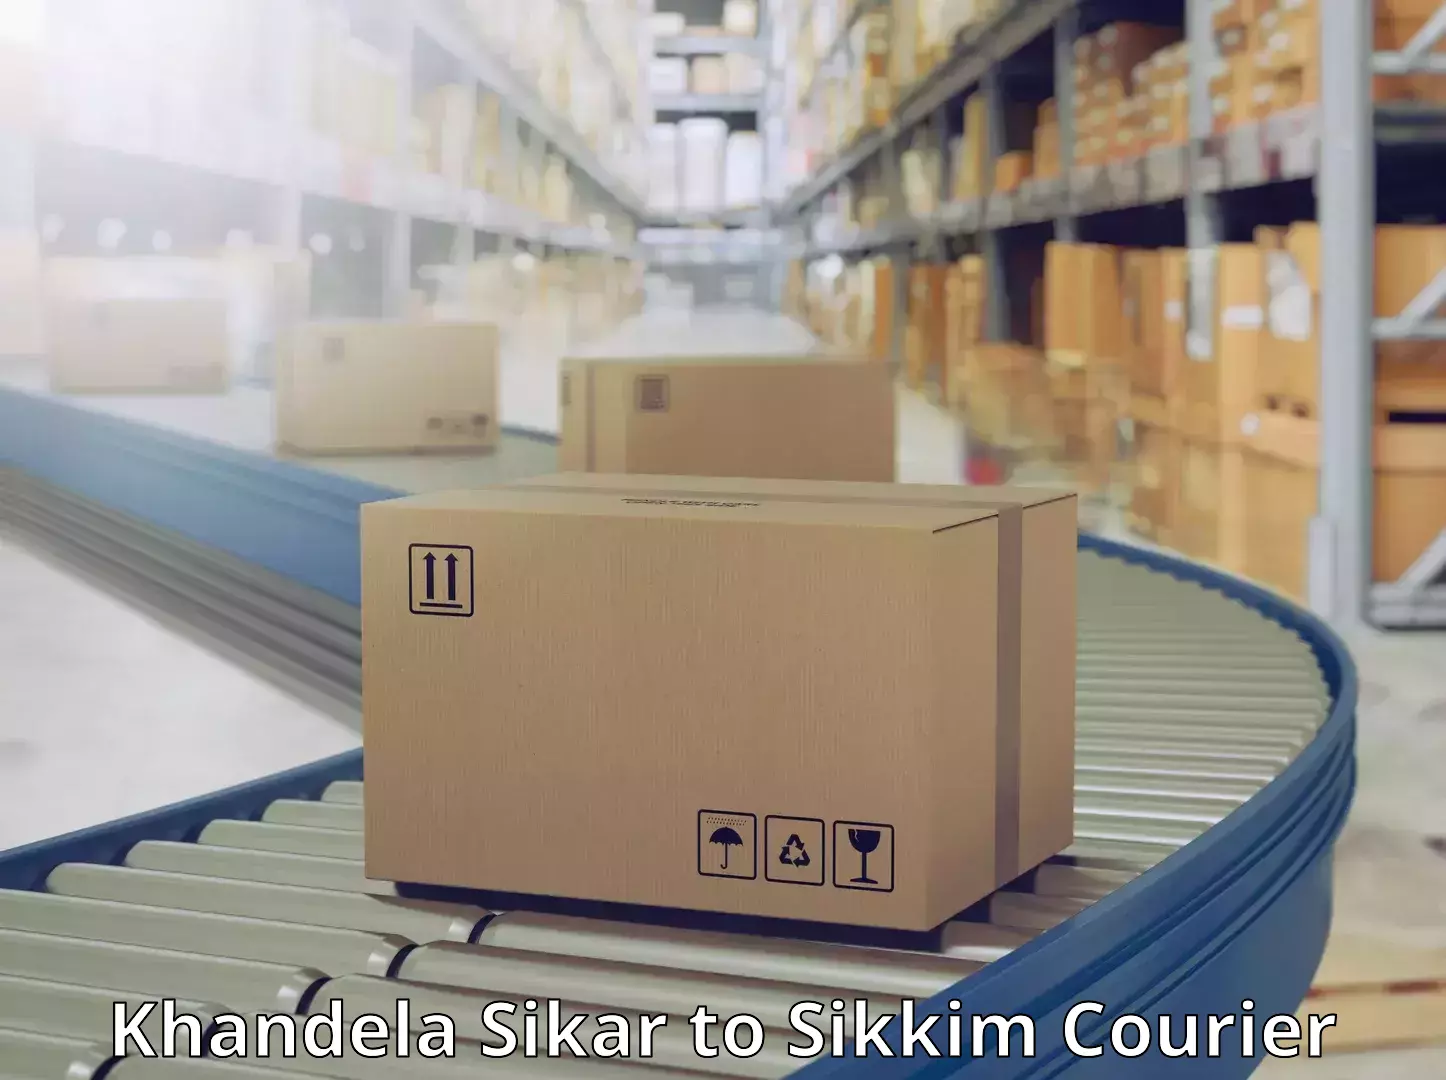 Global parcel delivery Khandela Sikar to Sikkim